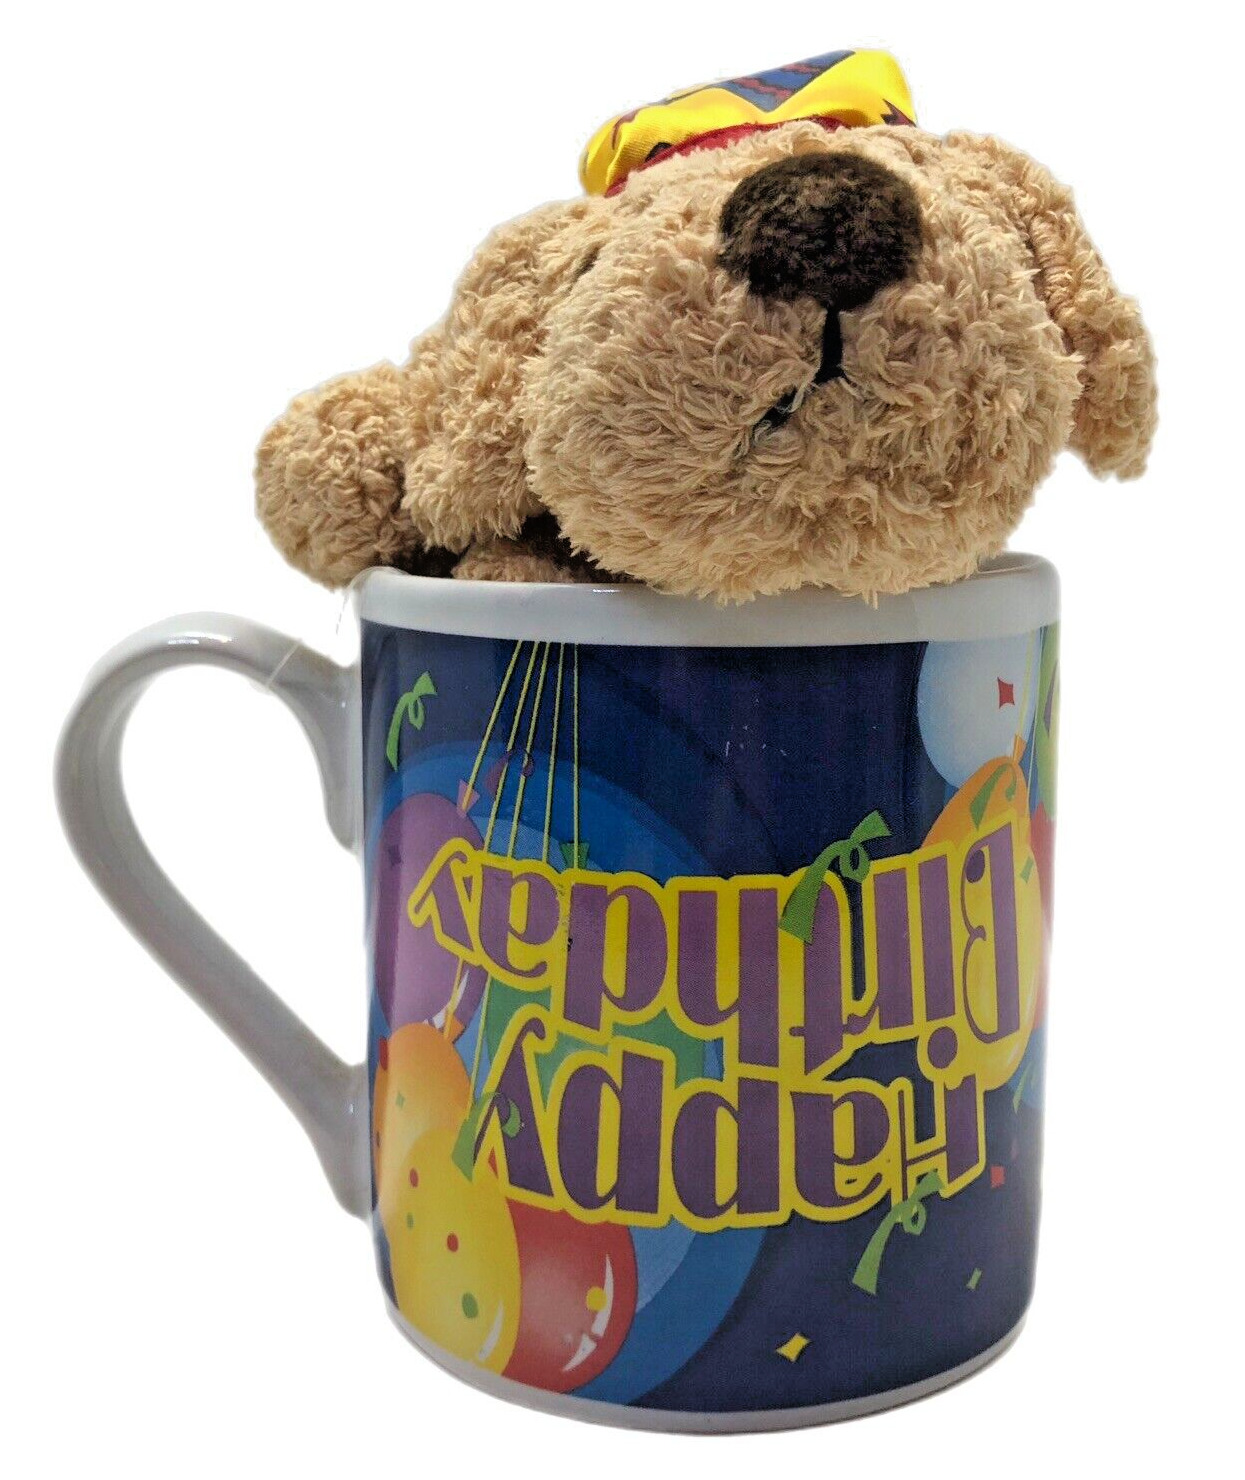 Happy Birthday Mug Cup Dan Dee Puppy TB Toy upside down on cup ERROR